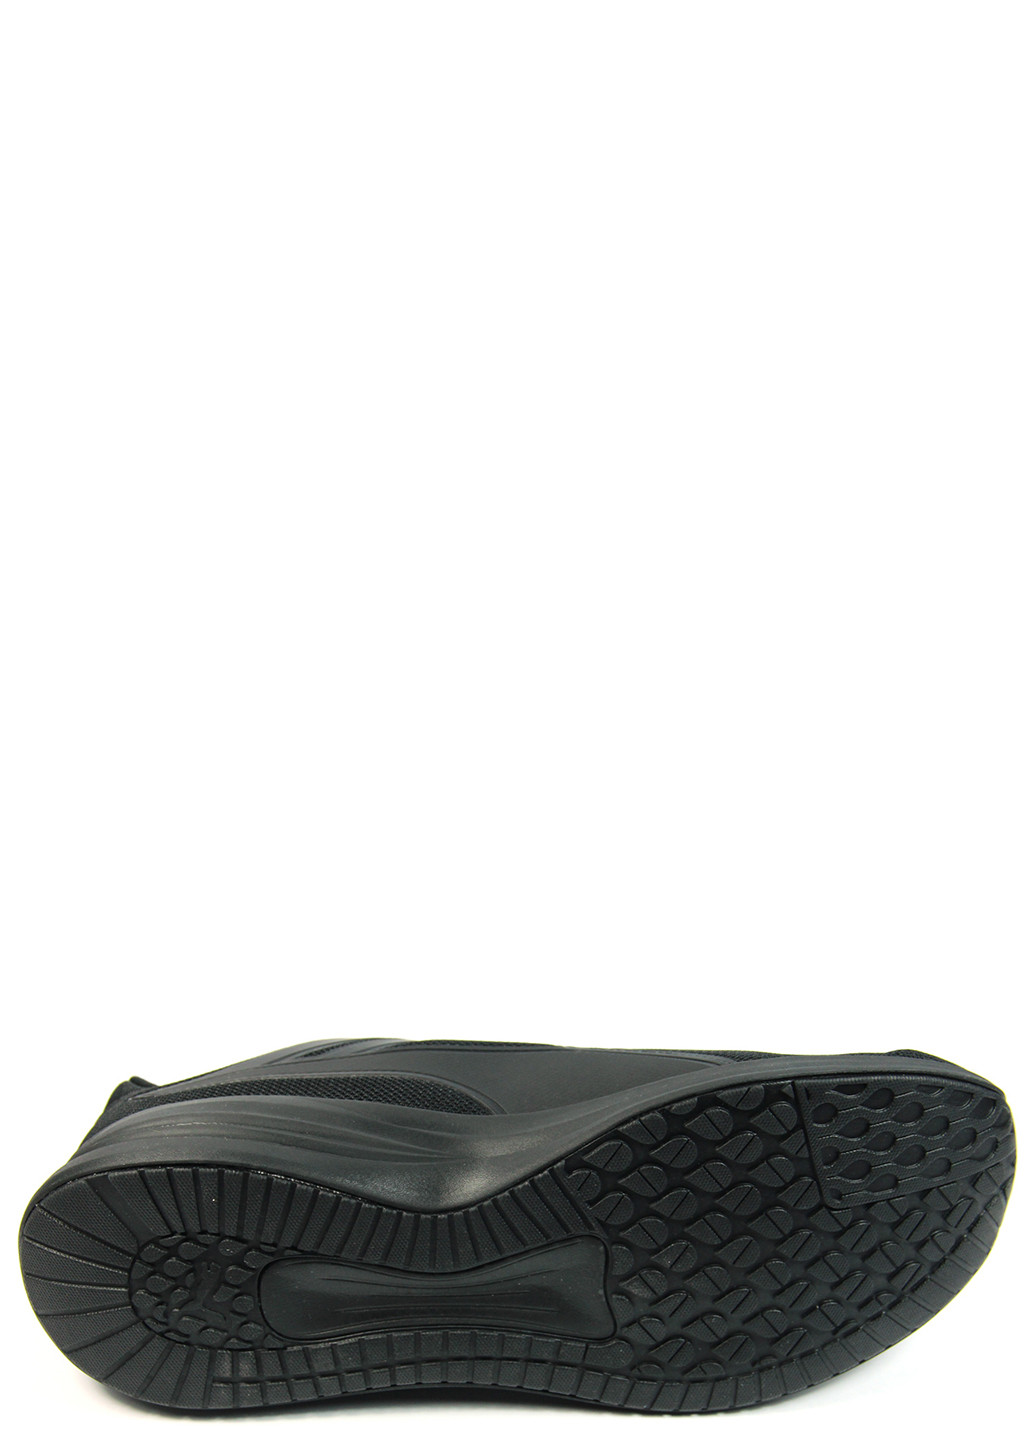 Черные демисезонные мужские кроссовки transport 377028-05 Puma